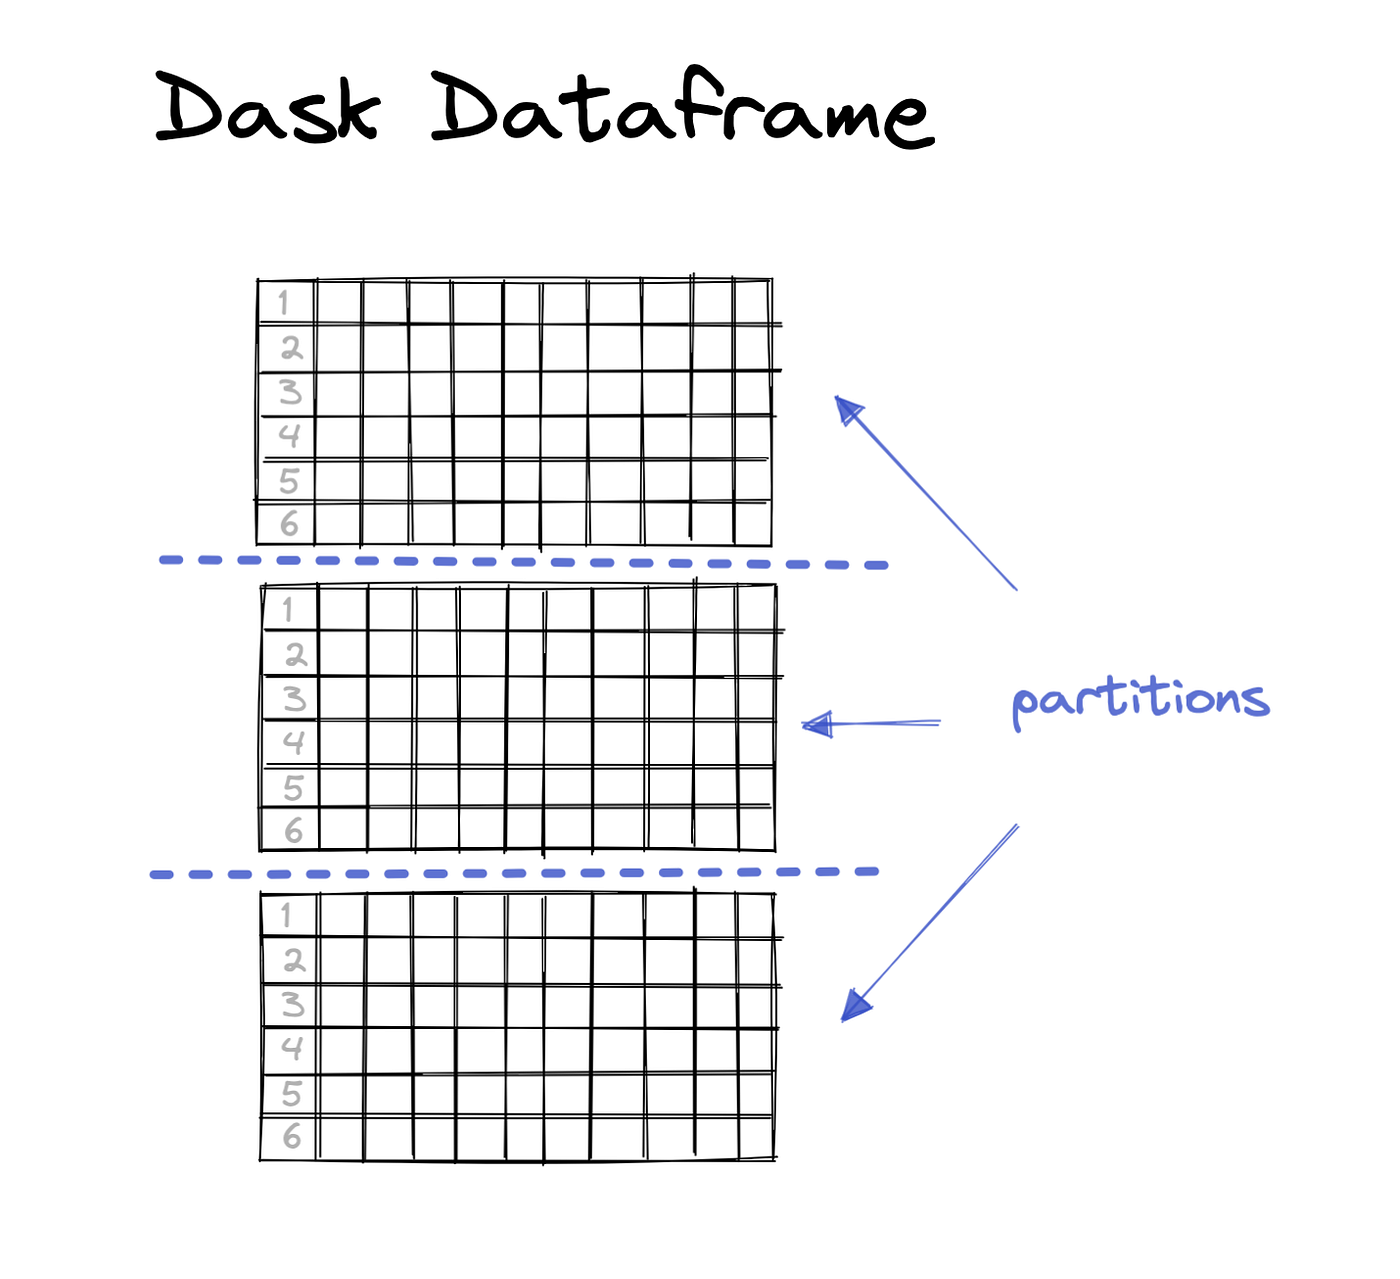 一个大的Dask数据帧划分为3个小分区